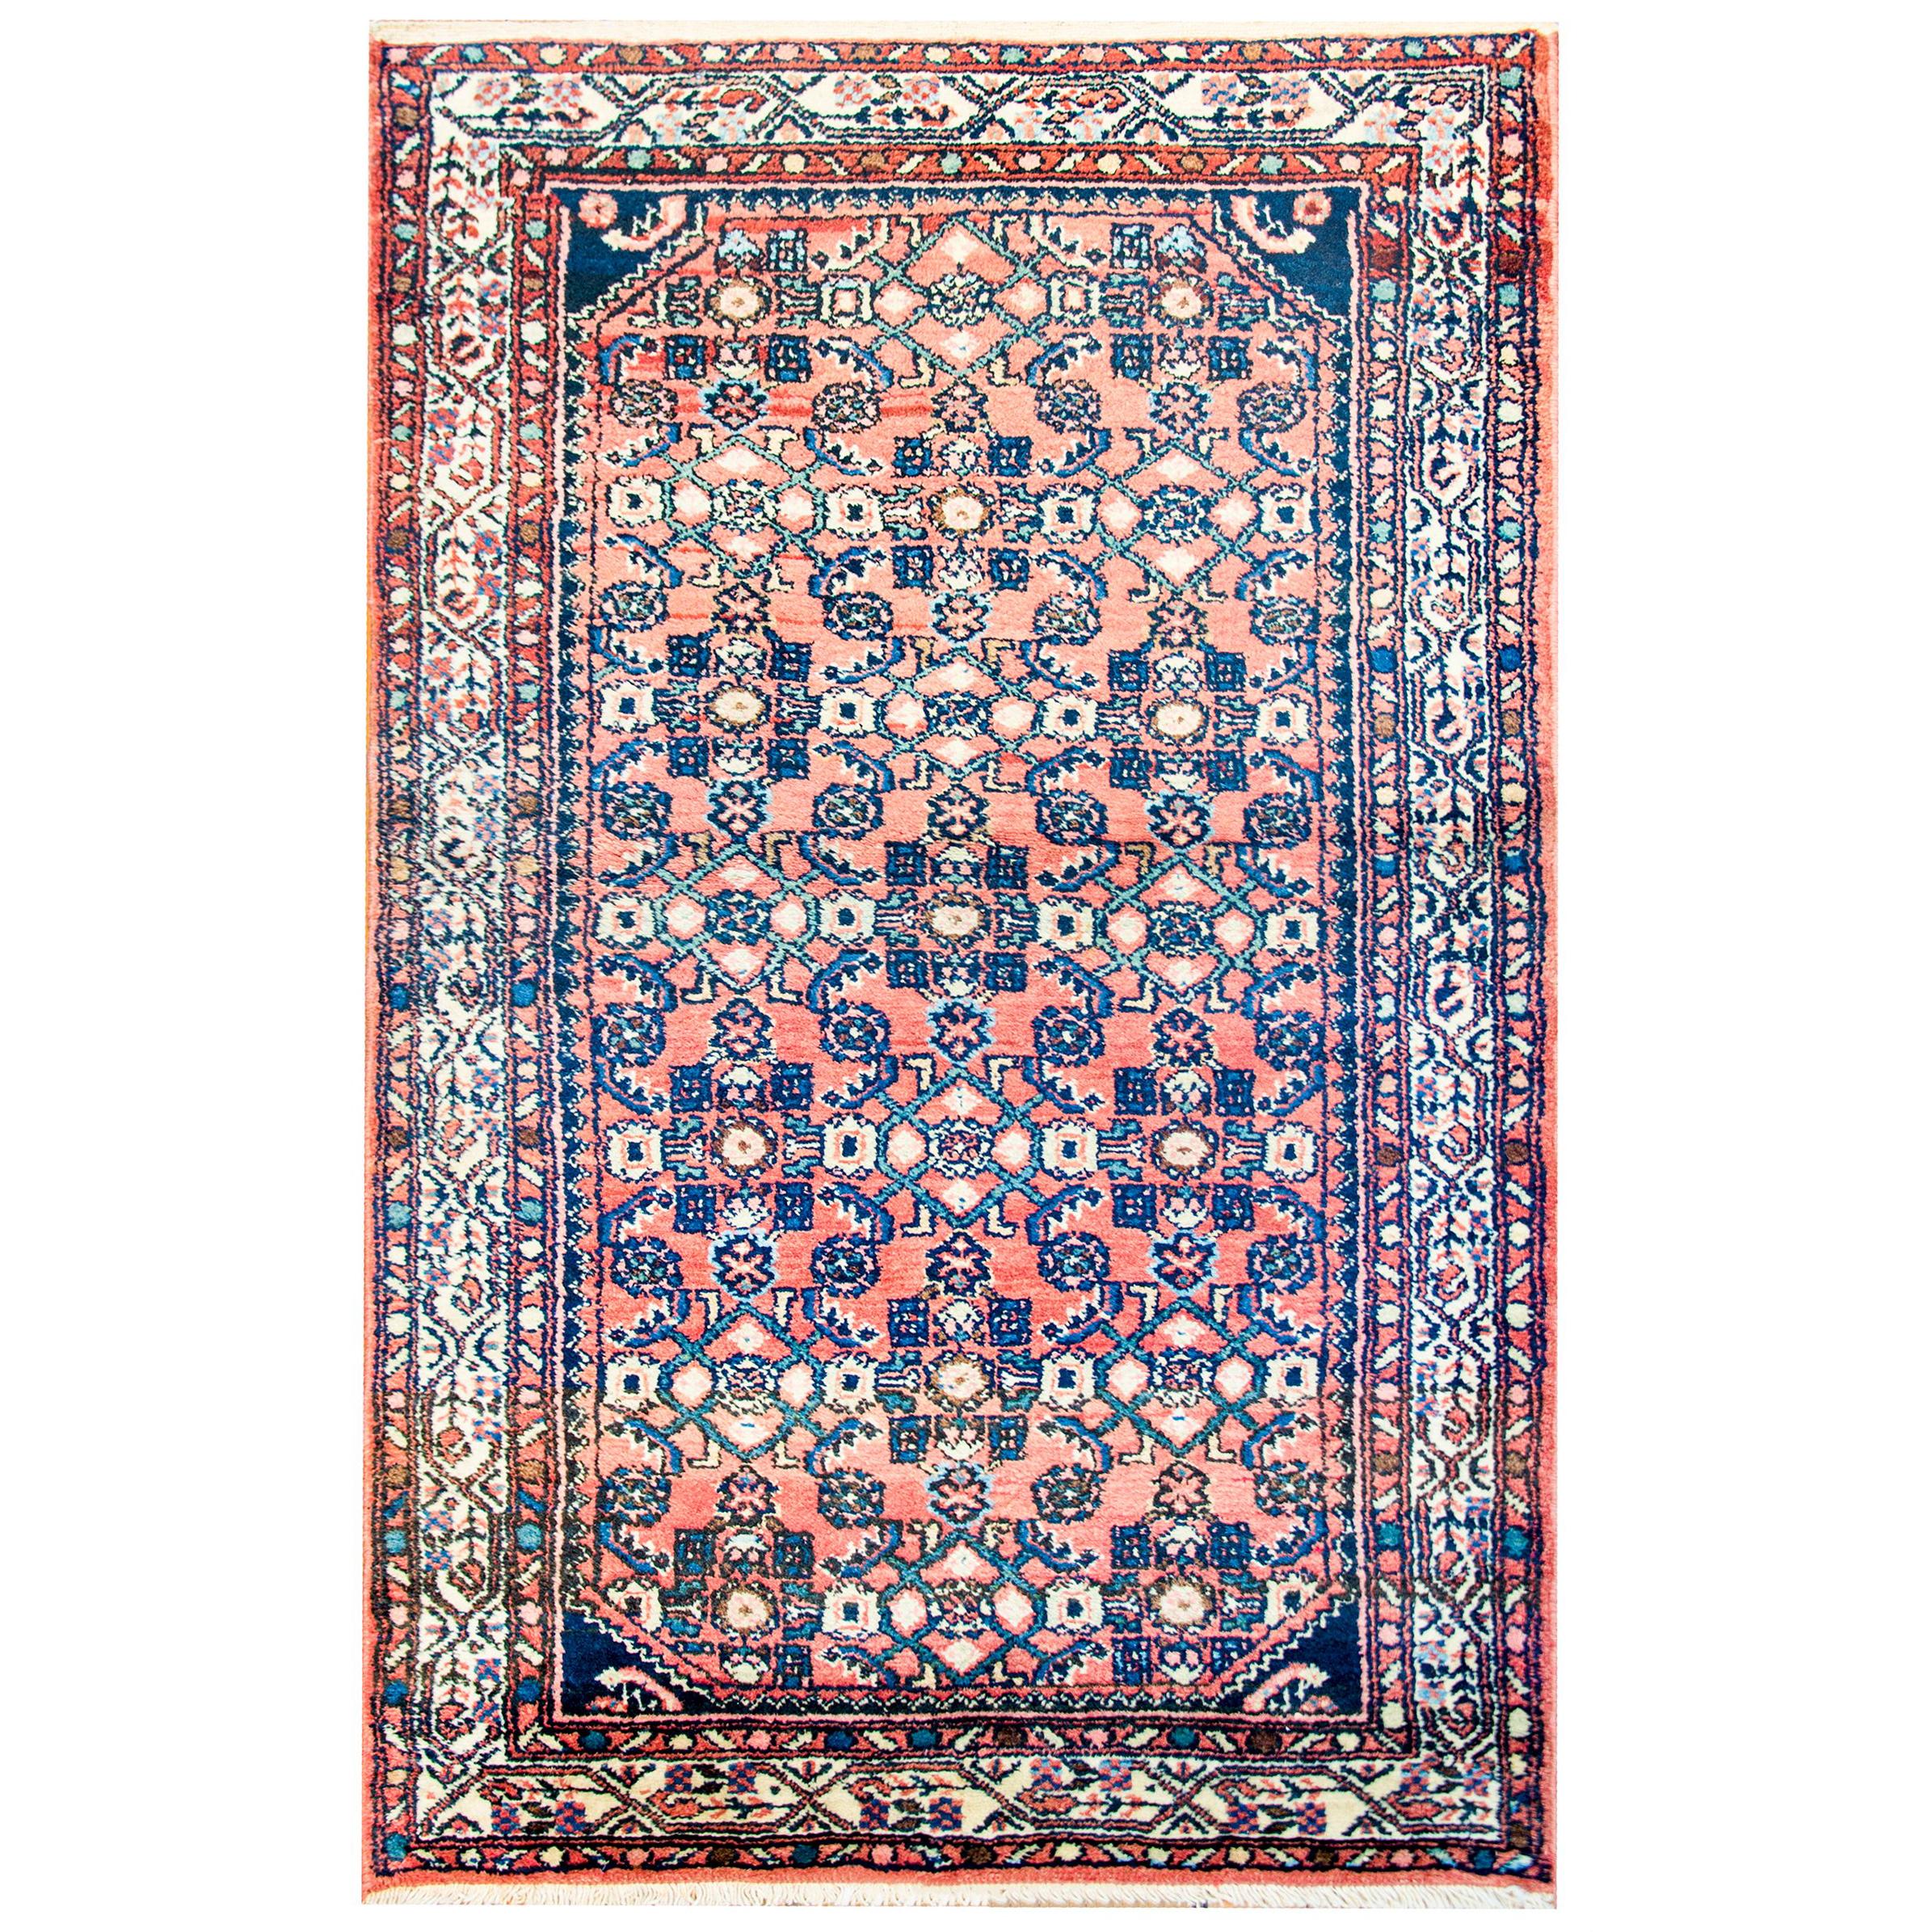 Herati-Teppich aus dem frühen 20. Jahrhundert, wunderbar